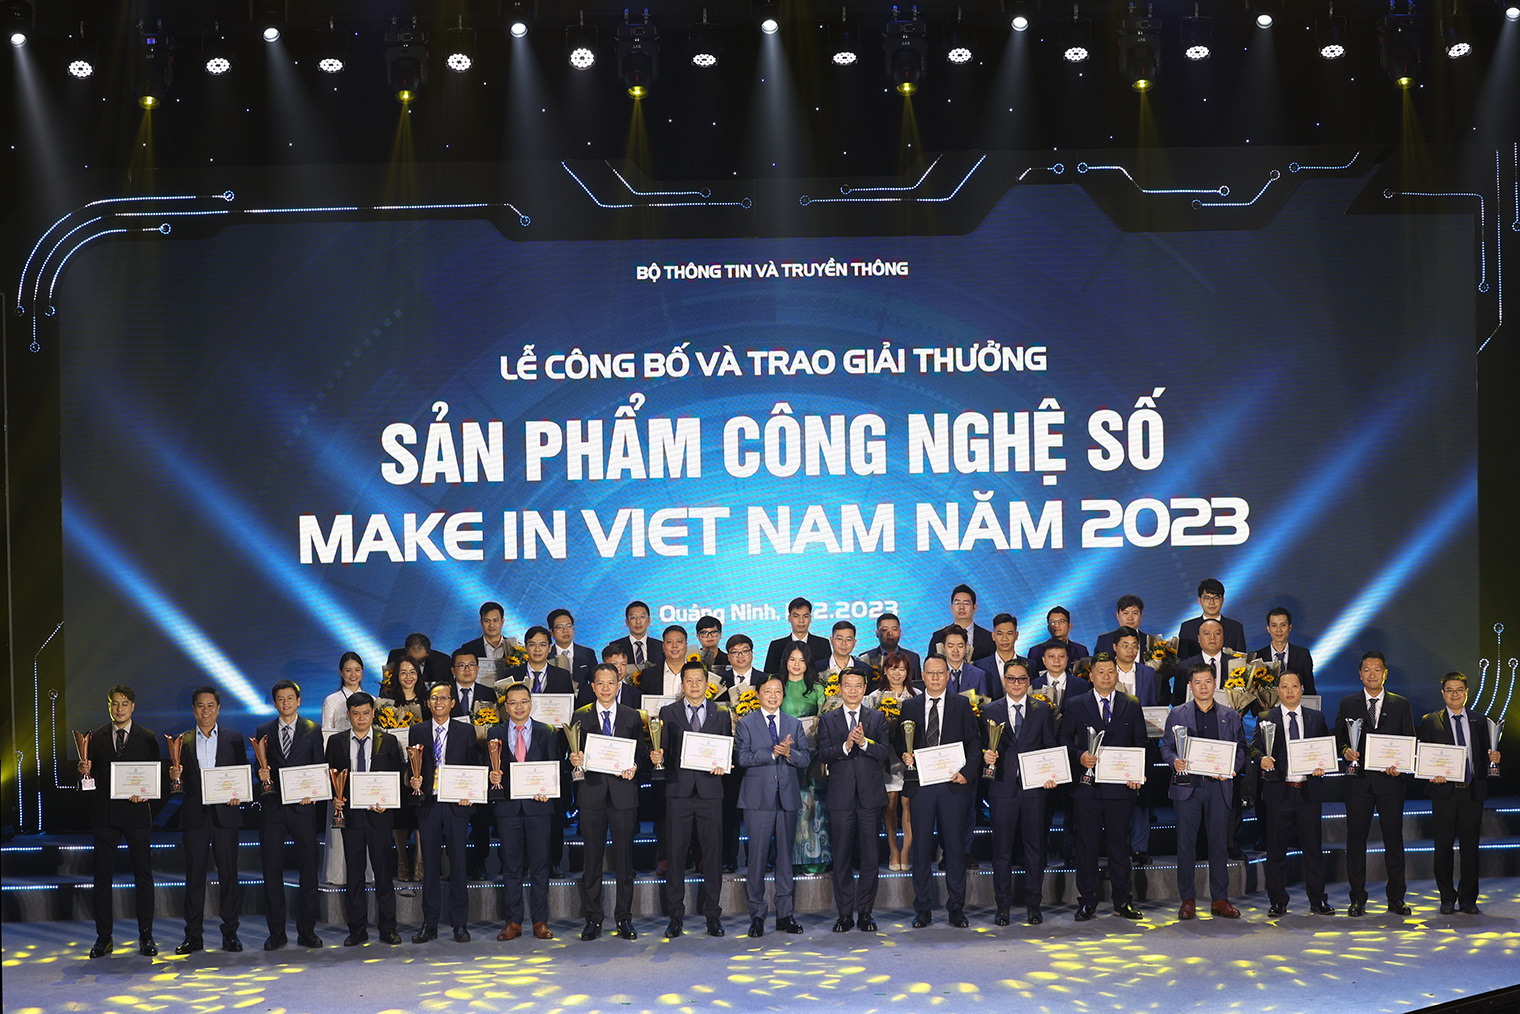 Khai mạc Diễn đàn quốc gia phát triển doanh nghiệp công nghệ số Việt Nam - Make in Viet Nam 2023- Ảnh 5.